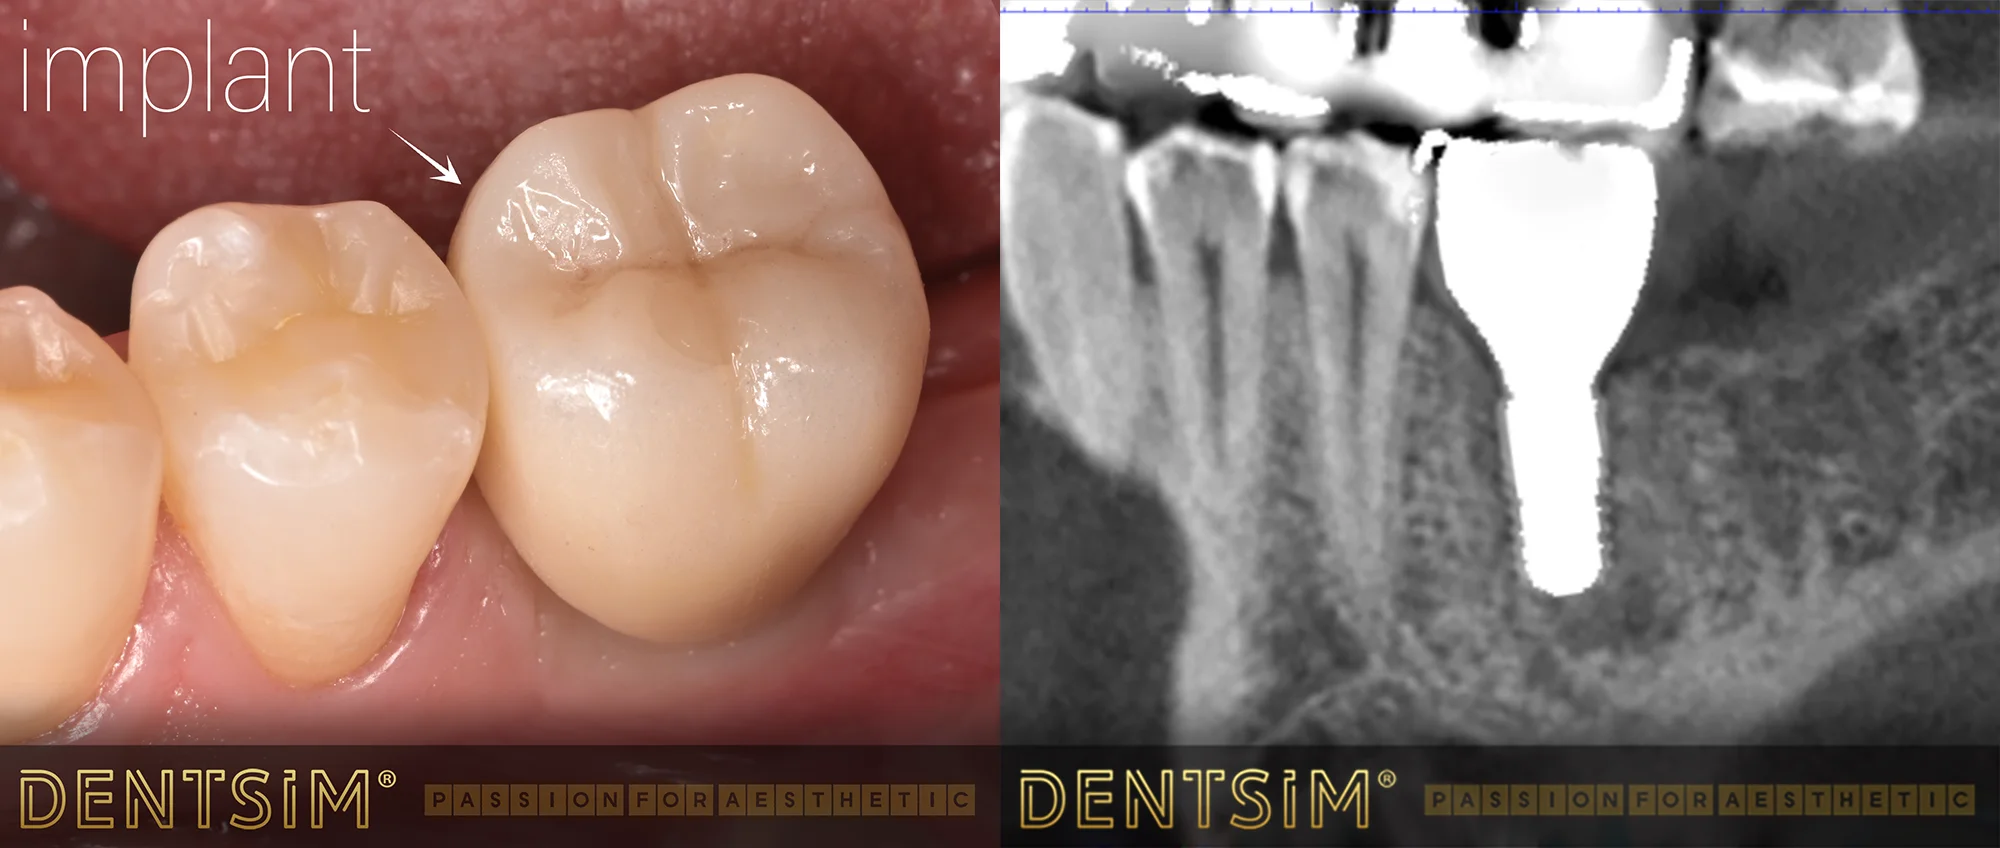 Implant dentar premium Bredent